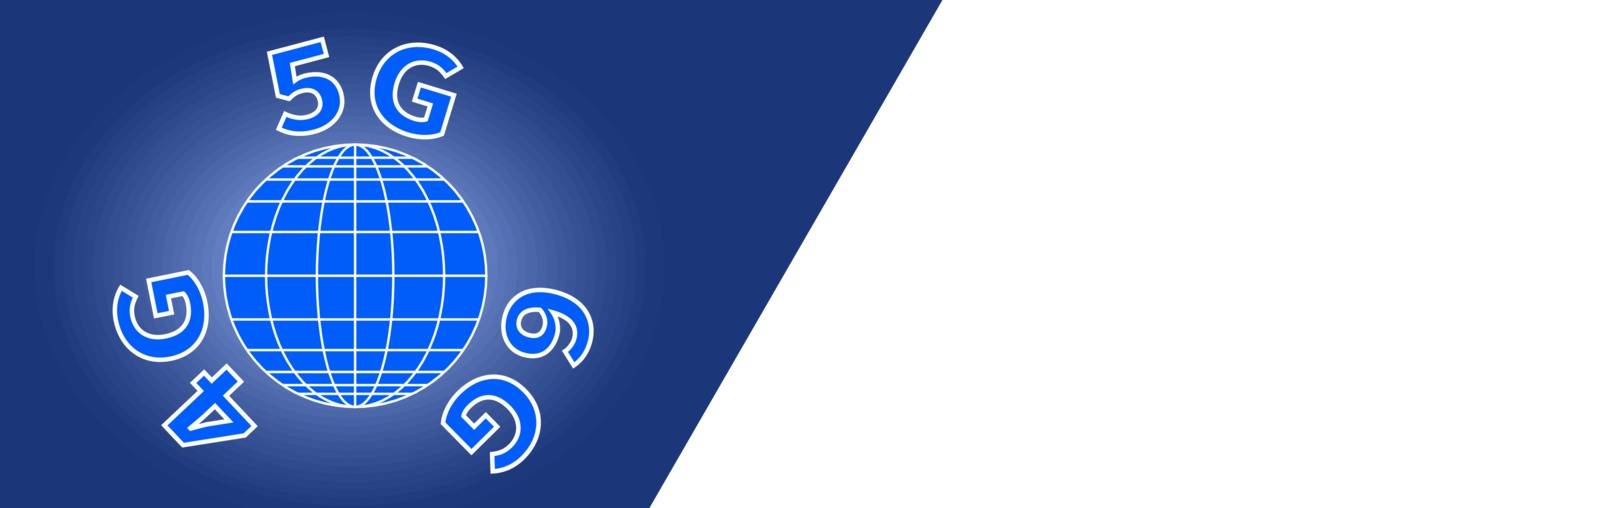 4G 5G 6G symbol for website design. Horizontal blue and white banner. World globe sign on blue background. Space for text on white background. World telecommunication theme. Vector illustration EPS 10